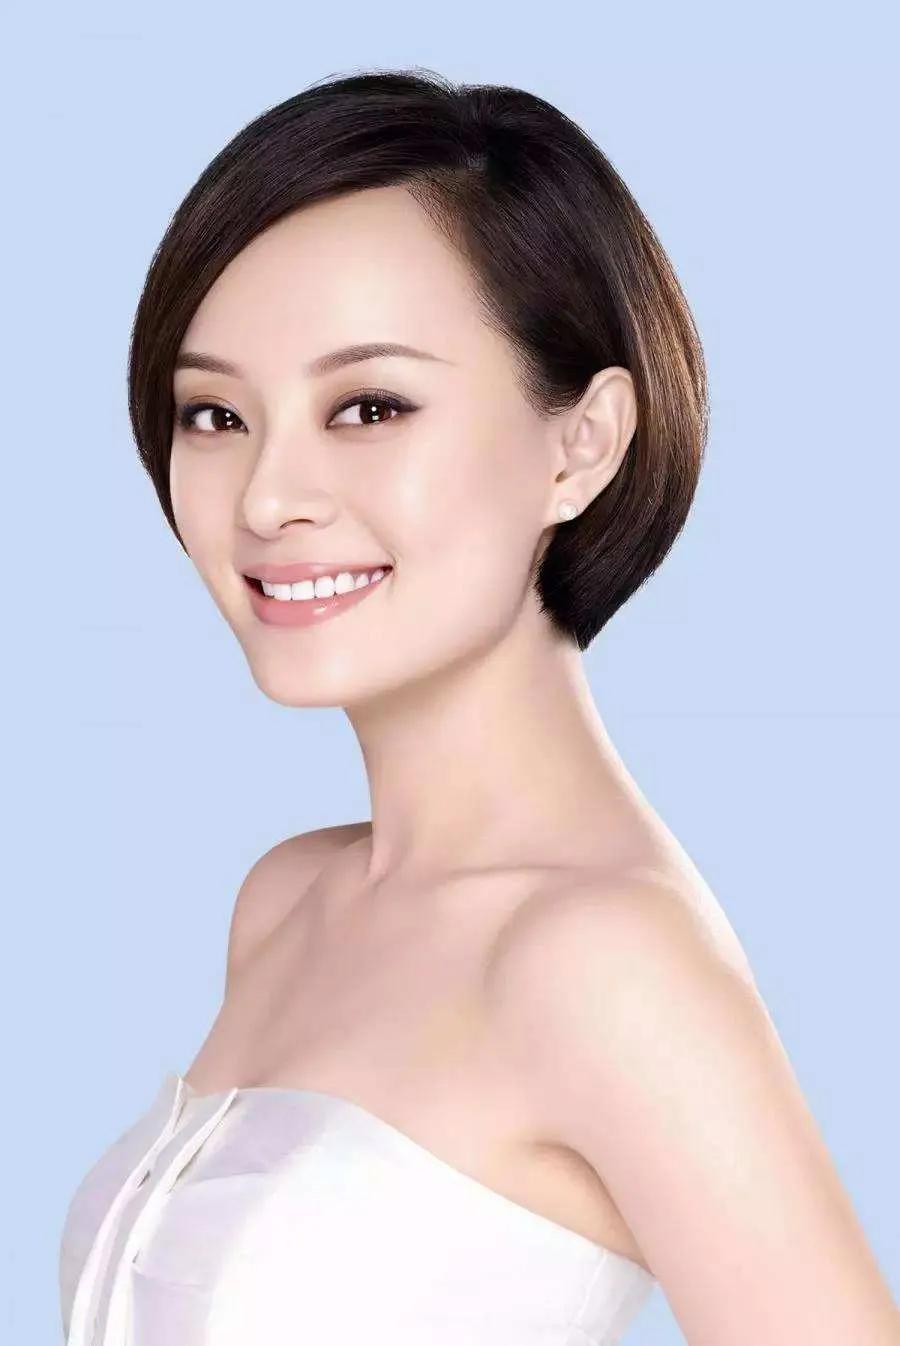 中国女性名人榜图片